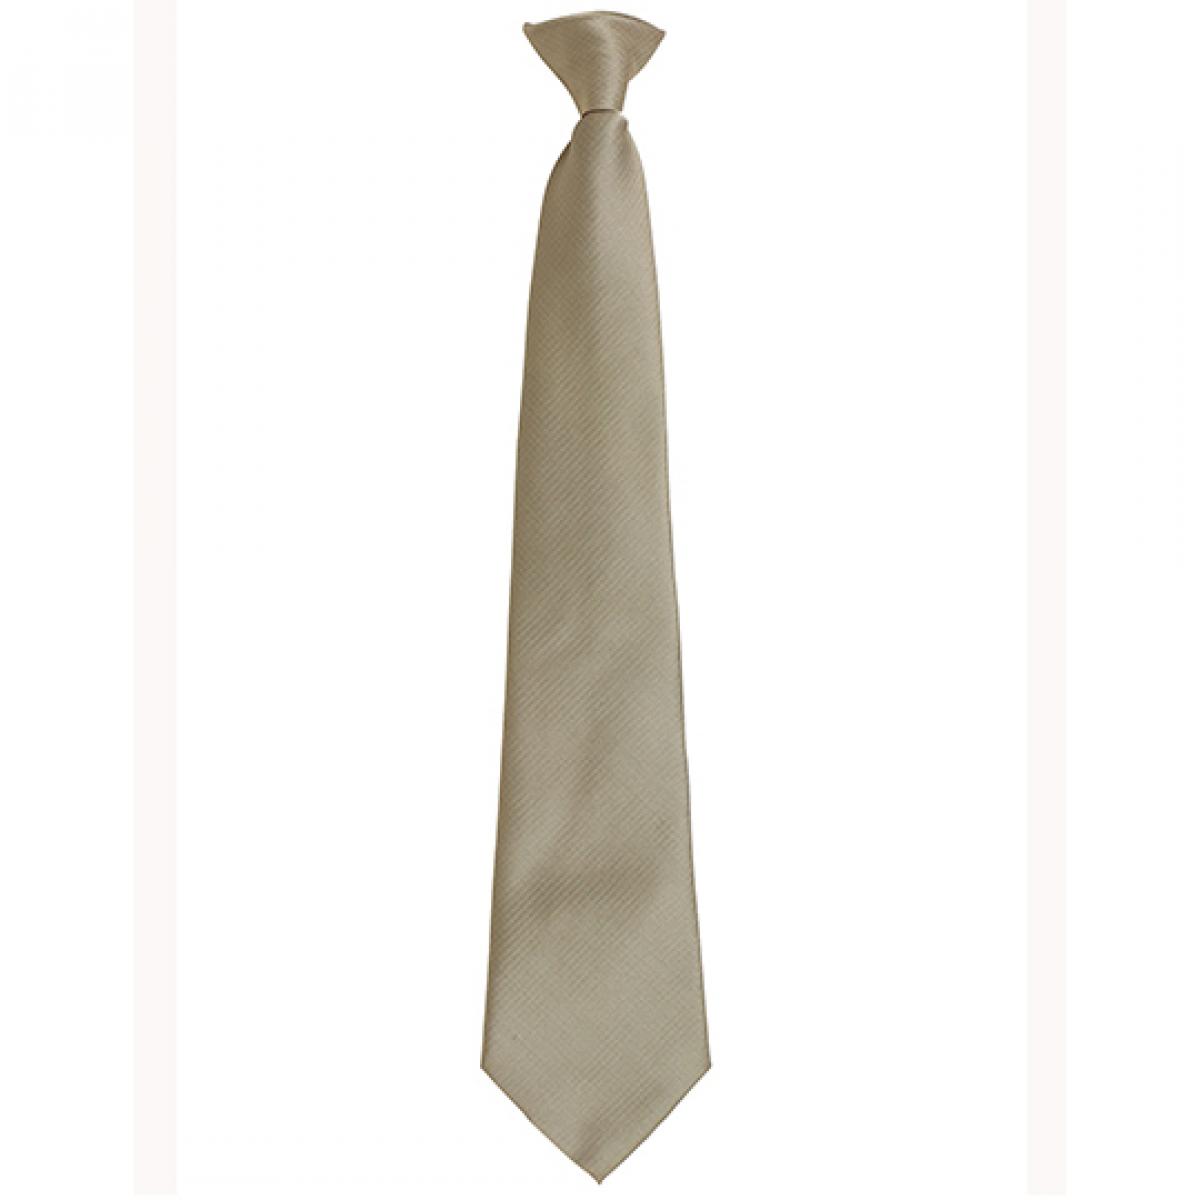 Hersteller: Premier Workwear Herstellernummer: PR785 Artikelbezeichnung: ´Colours´ Fashion Clip Tie Farbe: Khaki (ca. Pantone 452C)